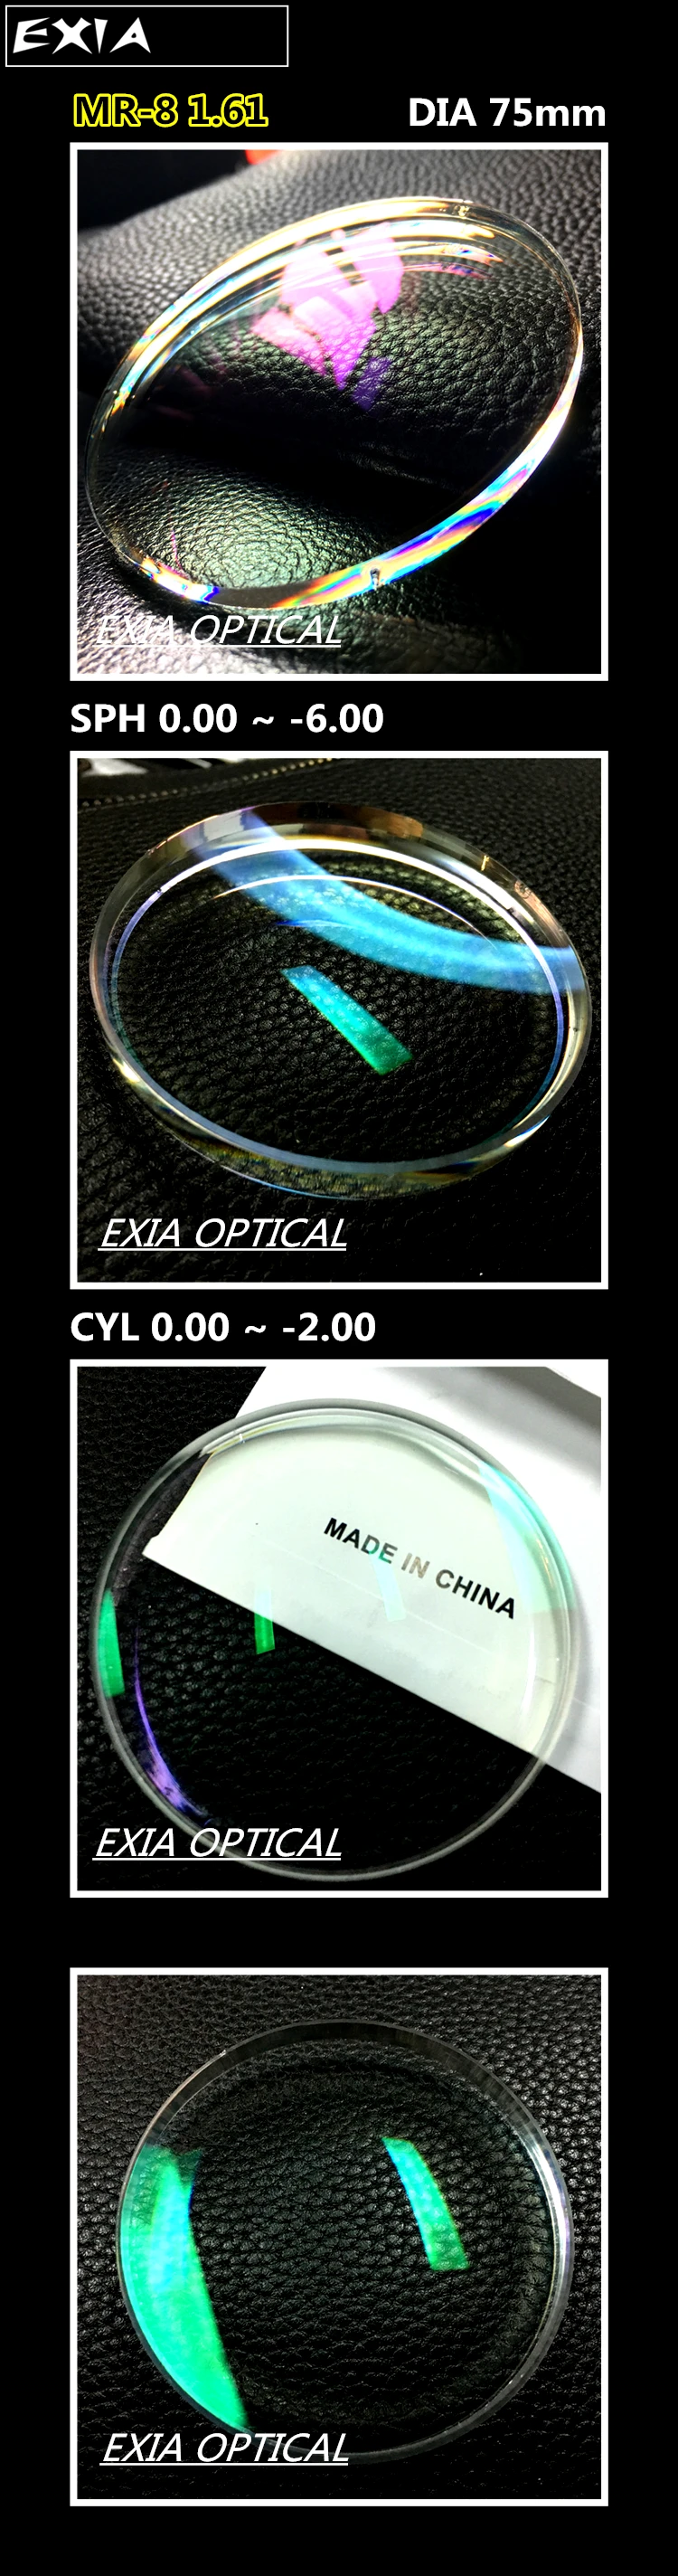 MR-8 1,61 Асферические оптические линзы супер гидрофбия S-HMC офтальмологический объектив KD-7 серии EXIA оптический